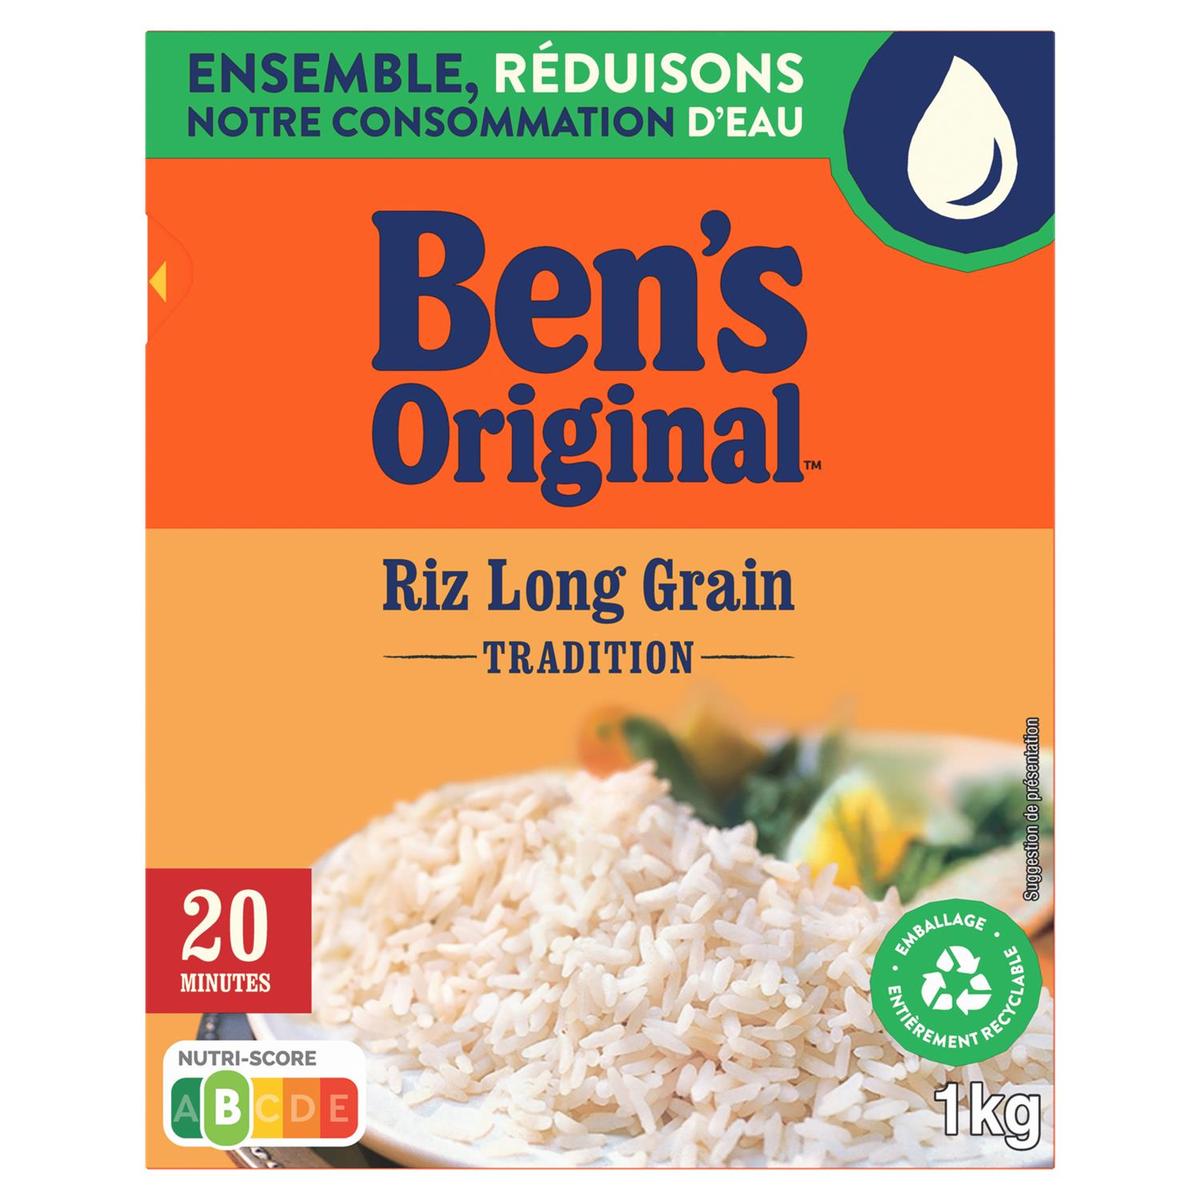 Riz Long Grain En Sachet Cuisson - Uncle Ben's - 1 kg